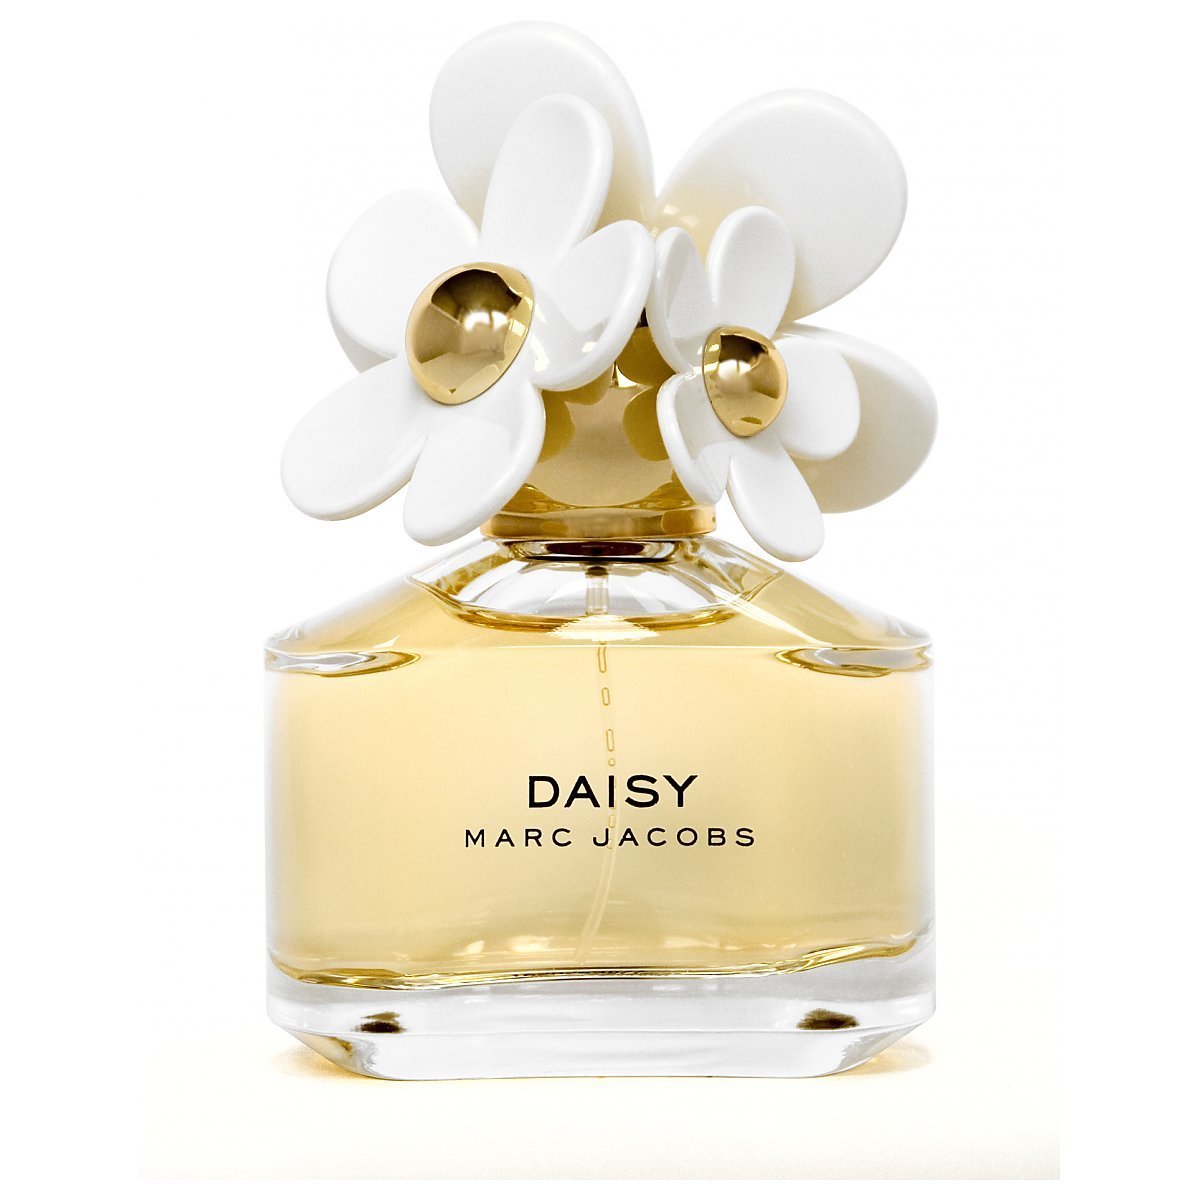 Marc Jacobs Daisy Woda toaletowa spray 50ml - Perfumeria Dolce.pl